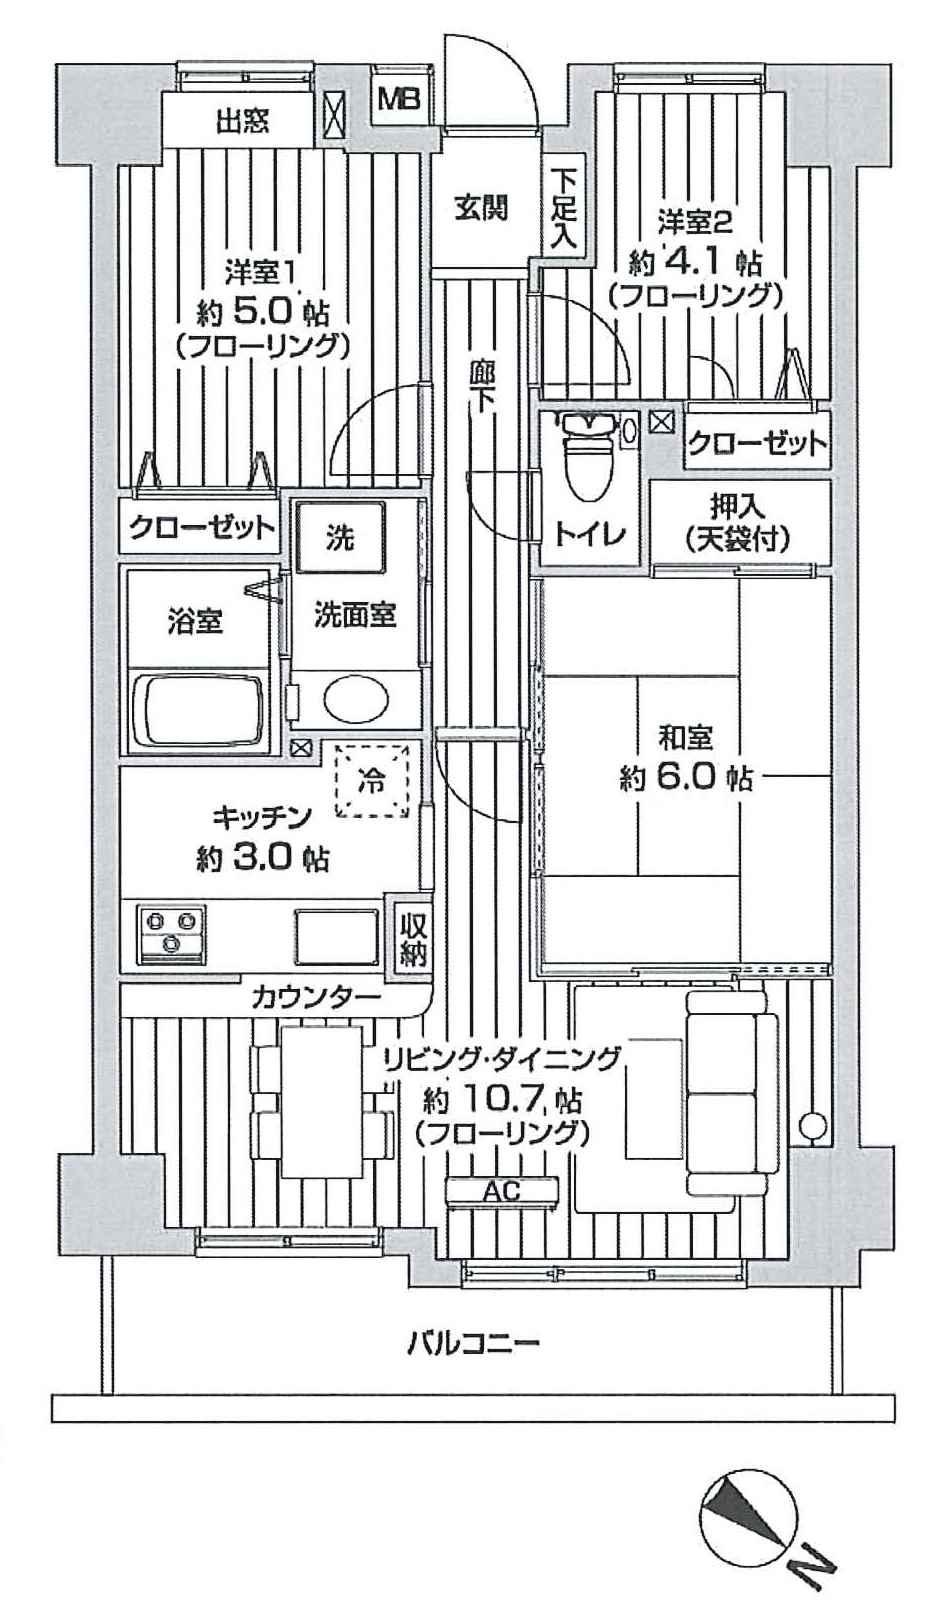 Floor plan. 3LDK, Price 24,800,000 yen, Footprint 61.8 sq m , Is a figure taken between the balcony area 7.01 sq m.